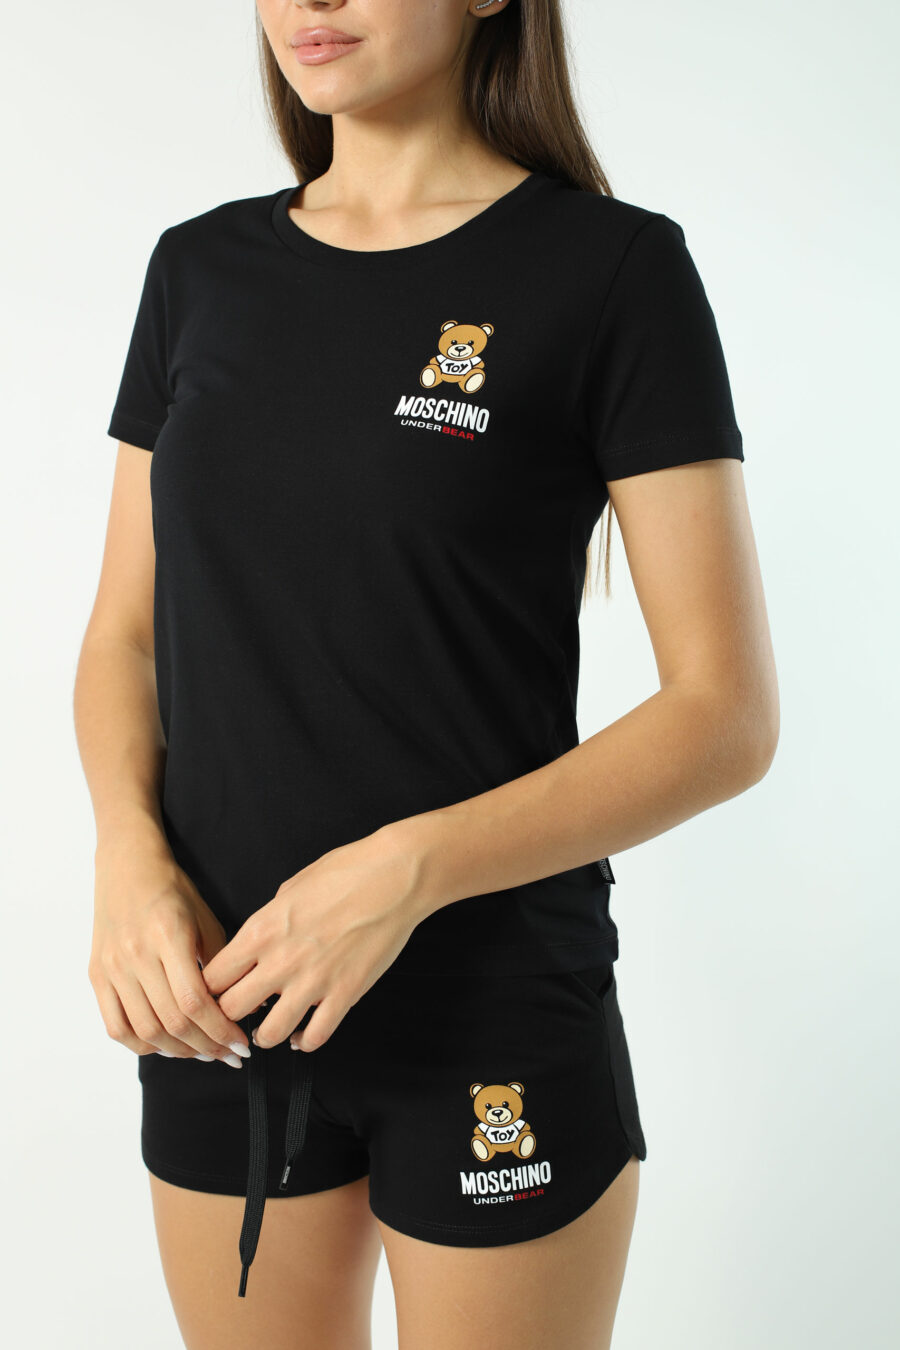 Schwarzes Slim Fit T-Shirt mit Unterbär-Logo - Fotos 2851